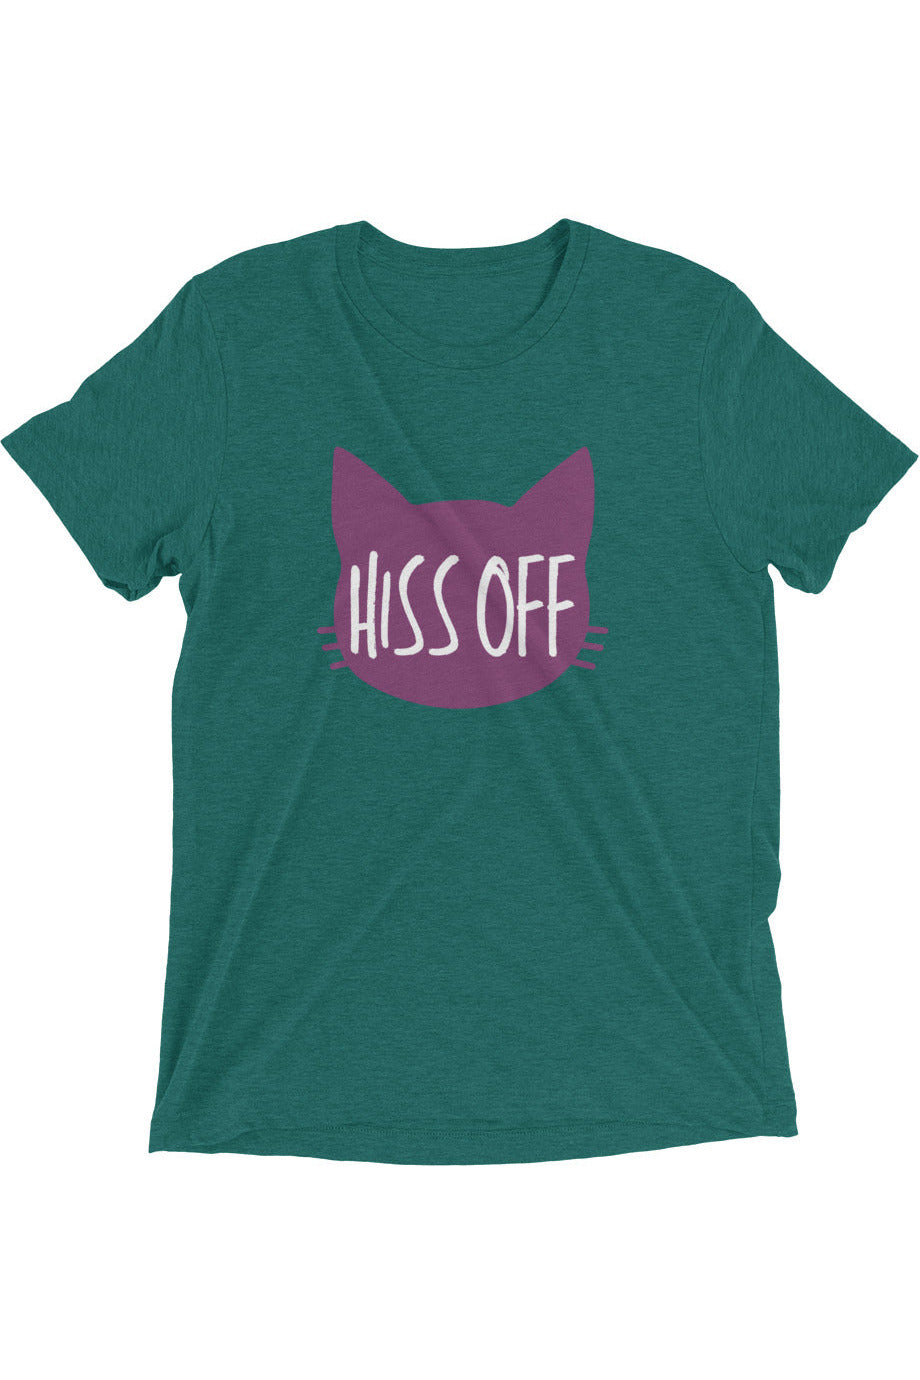 "Hiss Off" - Short sleeve t-shirt